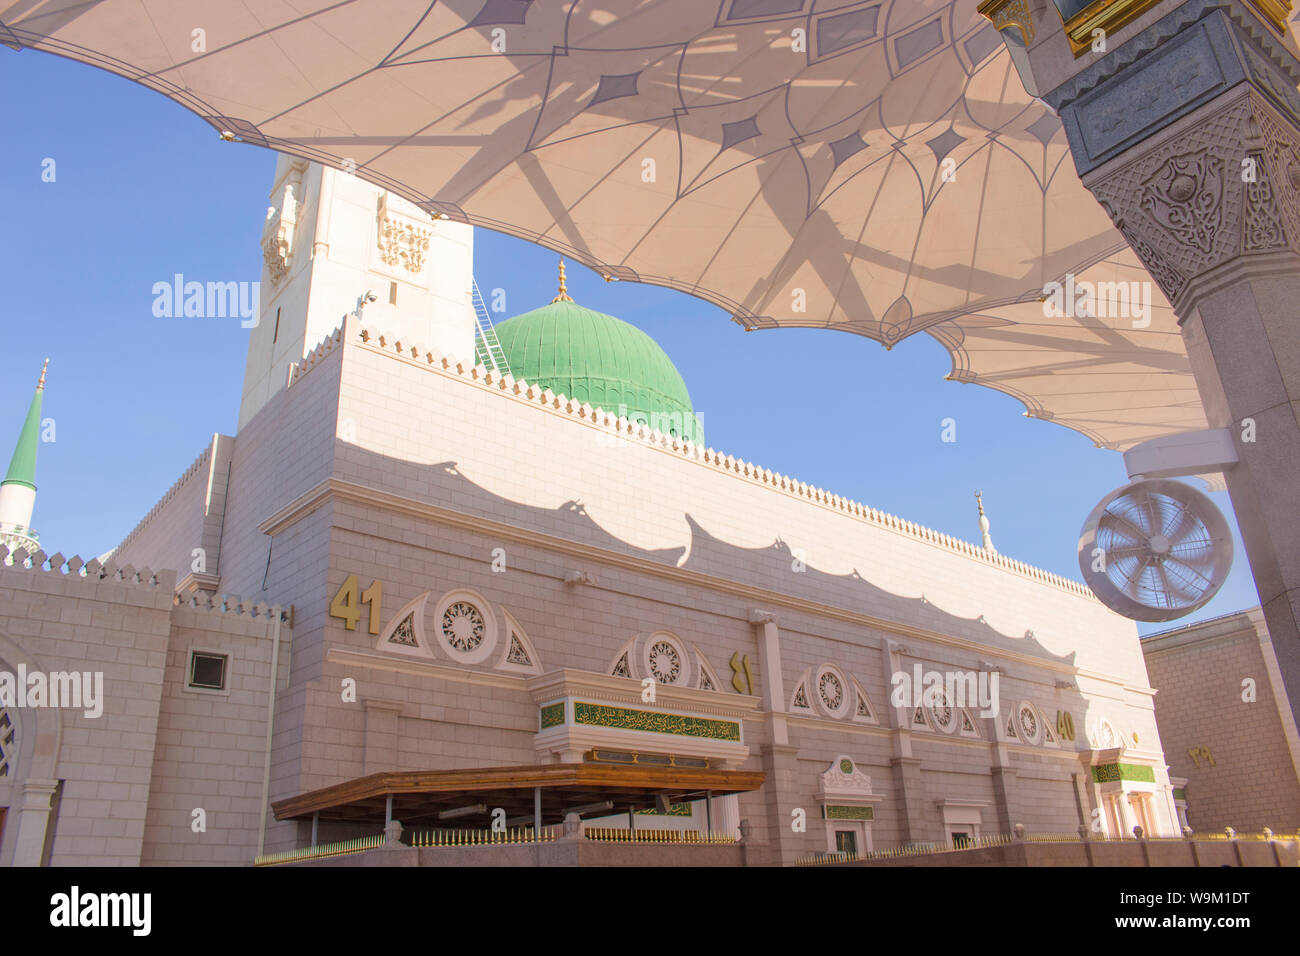 Médine, Arabie saoudite - AOÛT 2019 : pèlerins musulmans pour visiter la belle mosquée Nabawi, destination la mosquée du Prophète qui a de grands architectur Banque D'Images